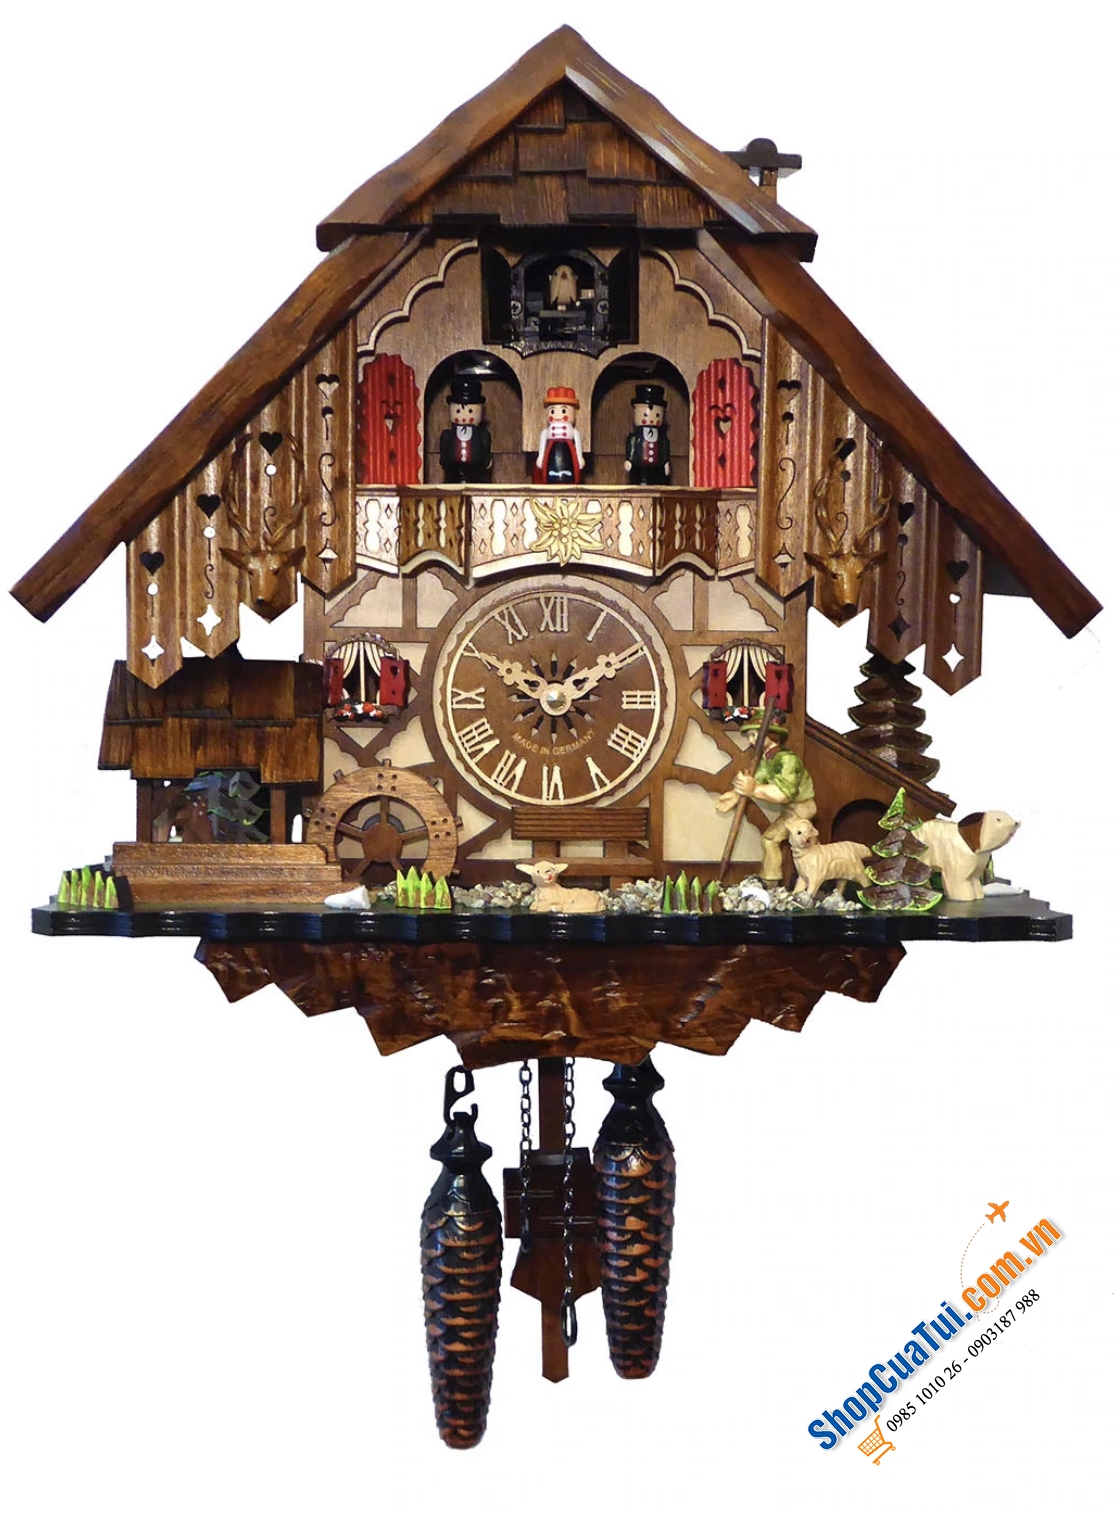 Quartz cuckoo clock with music & dancing couples Art. Nr. 48712 QMT (size 35x34x18 cm) kỹ từng đường nét (2 chú hươu quá tinh xảo luôn) - Made in Germany